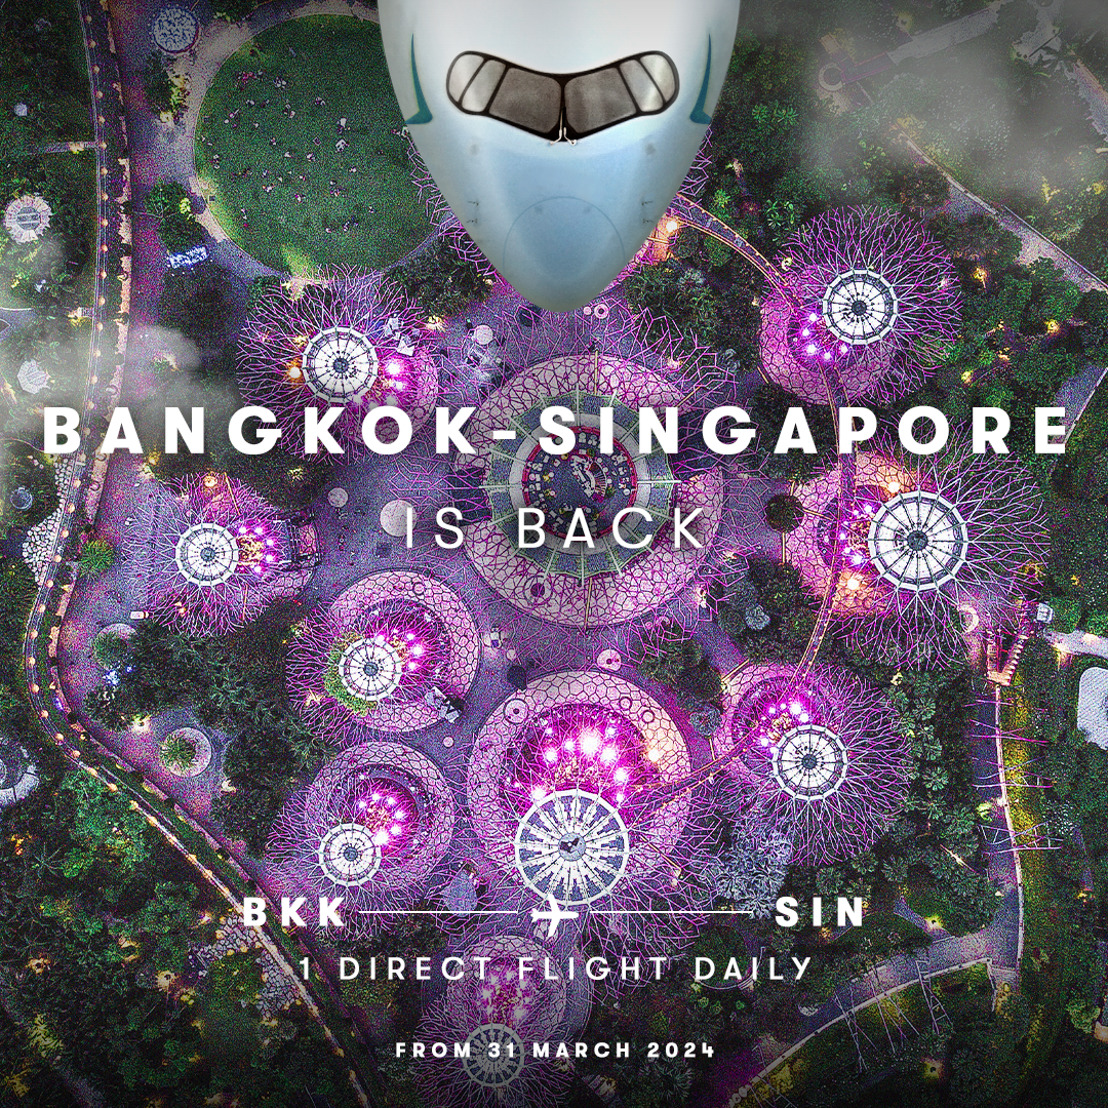 Cathay Pacific resumes daily flights between Bangkok and Singapore